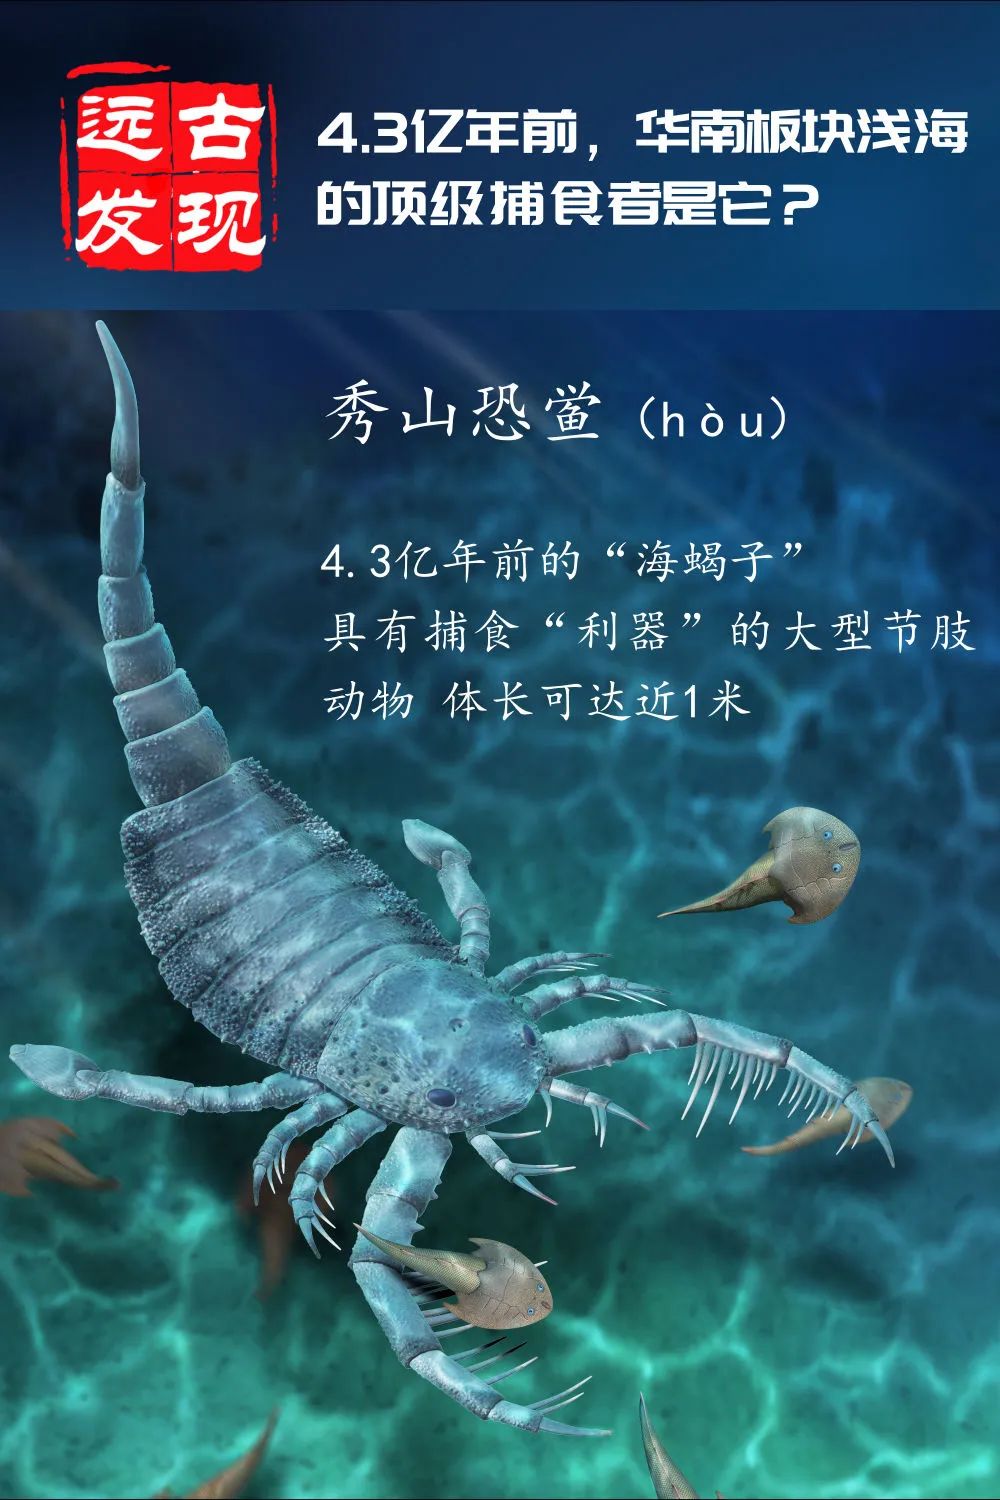 海洋中的板足鲎是一种重要的节肢动物,它们形似蝎子,故俗称"海蝎子"